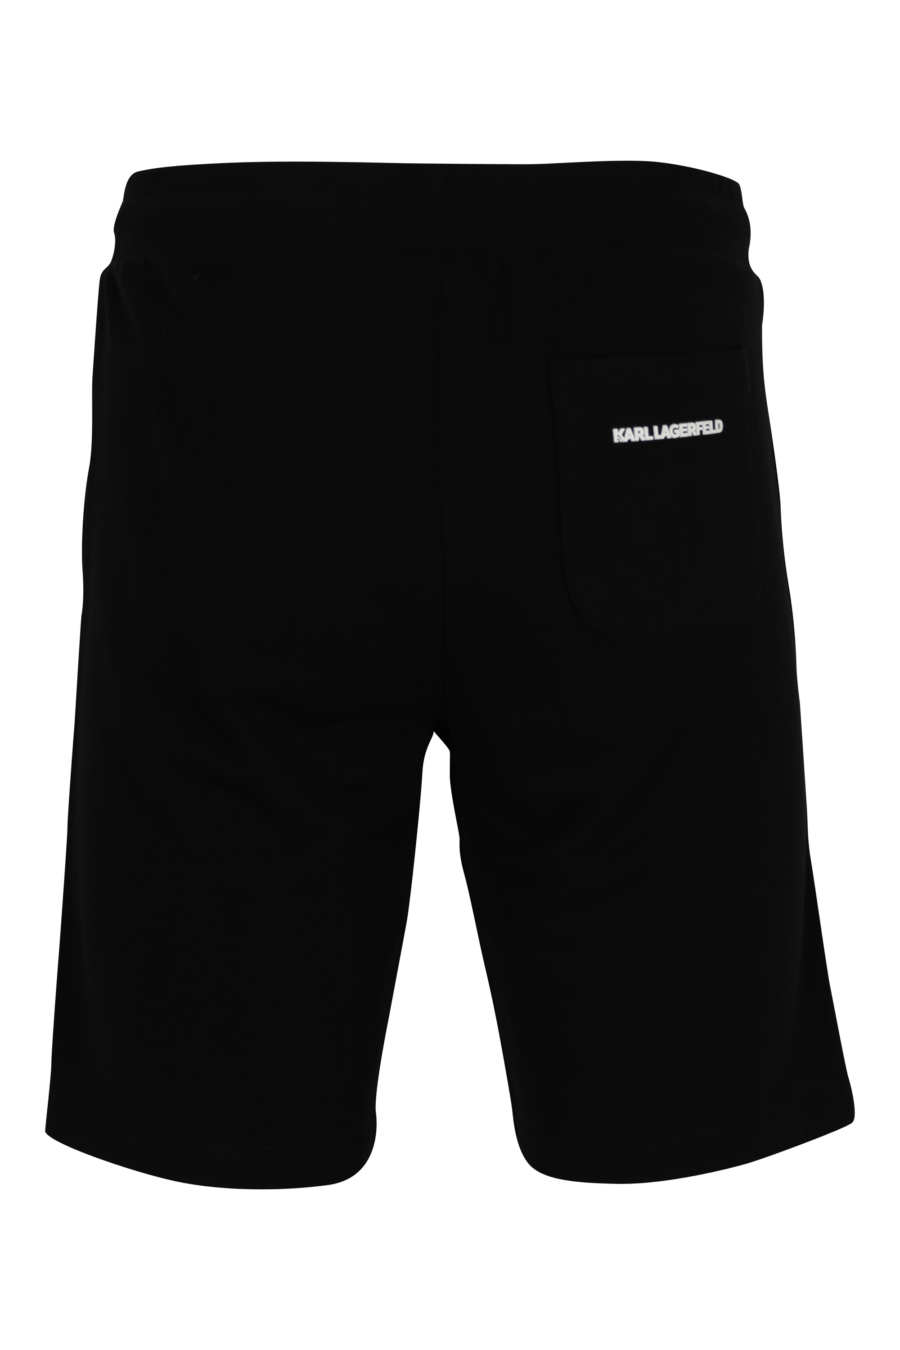 Pantalón de chándal negro midi con minilogo "karl" en goma - 4062226933087 2